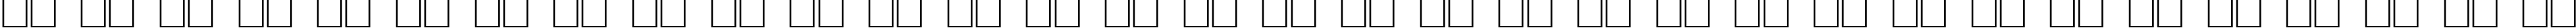 Пример написания русского алфавита шрифтом Stilla